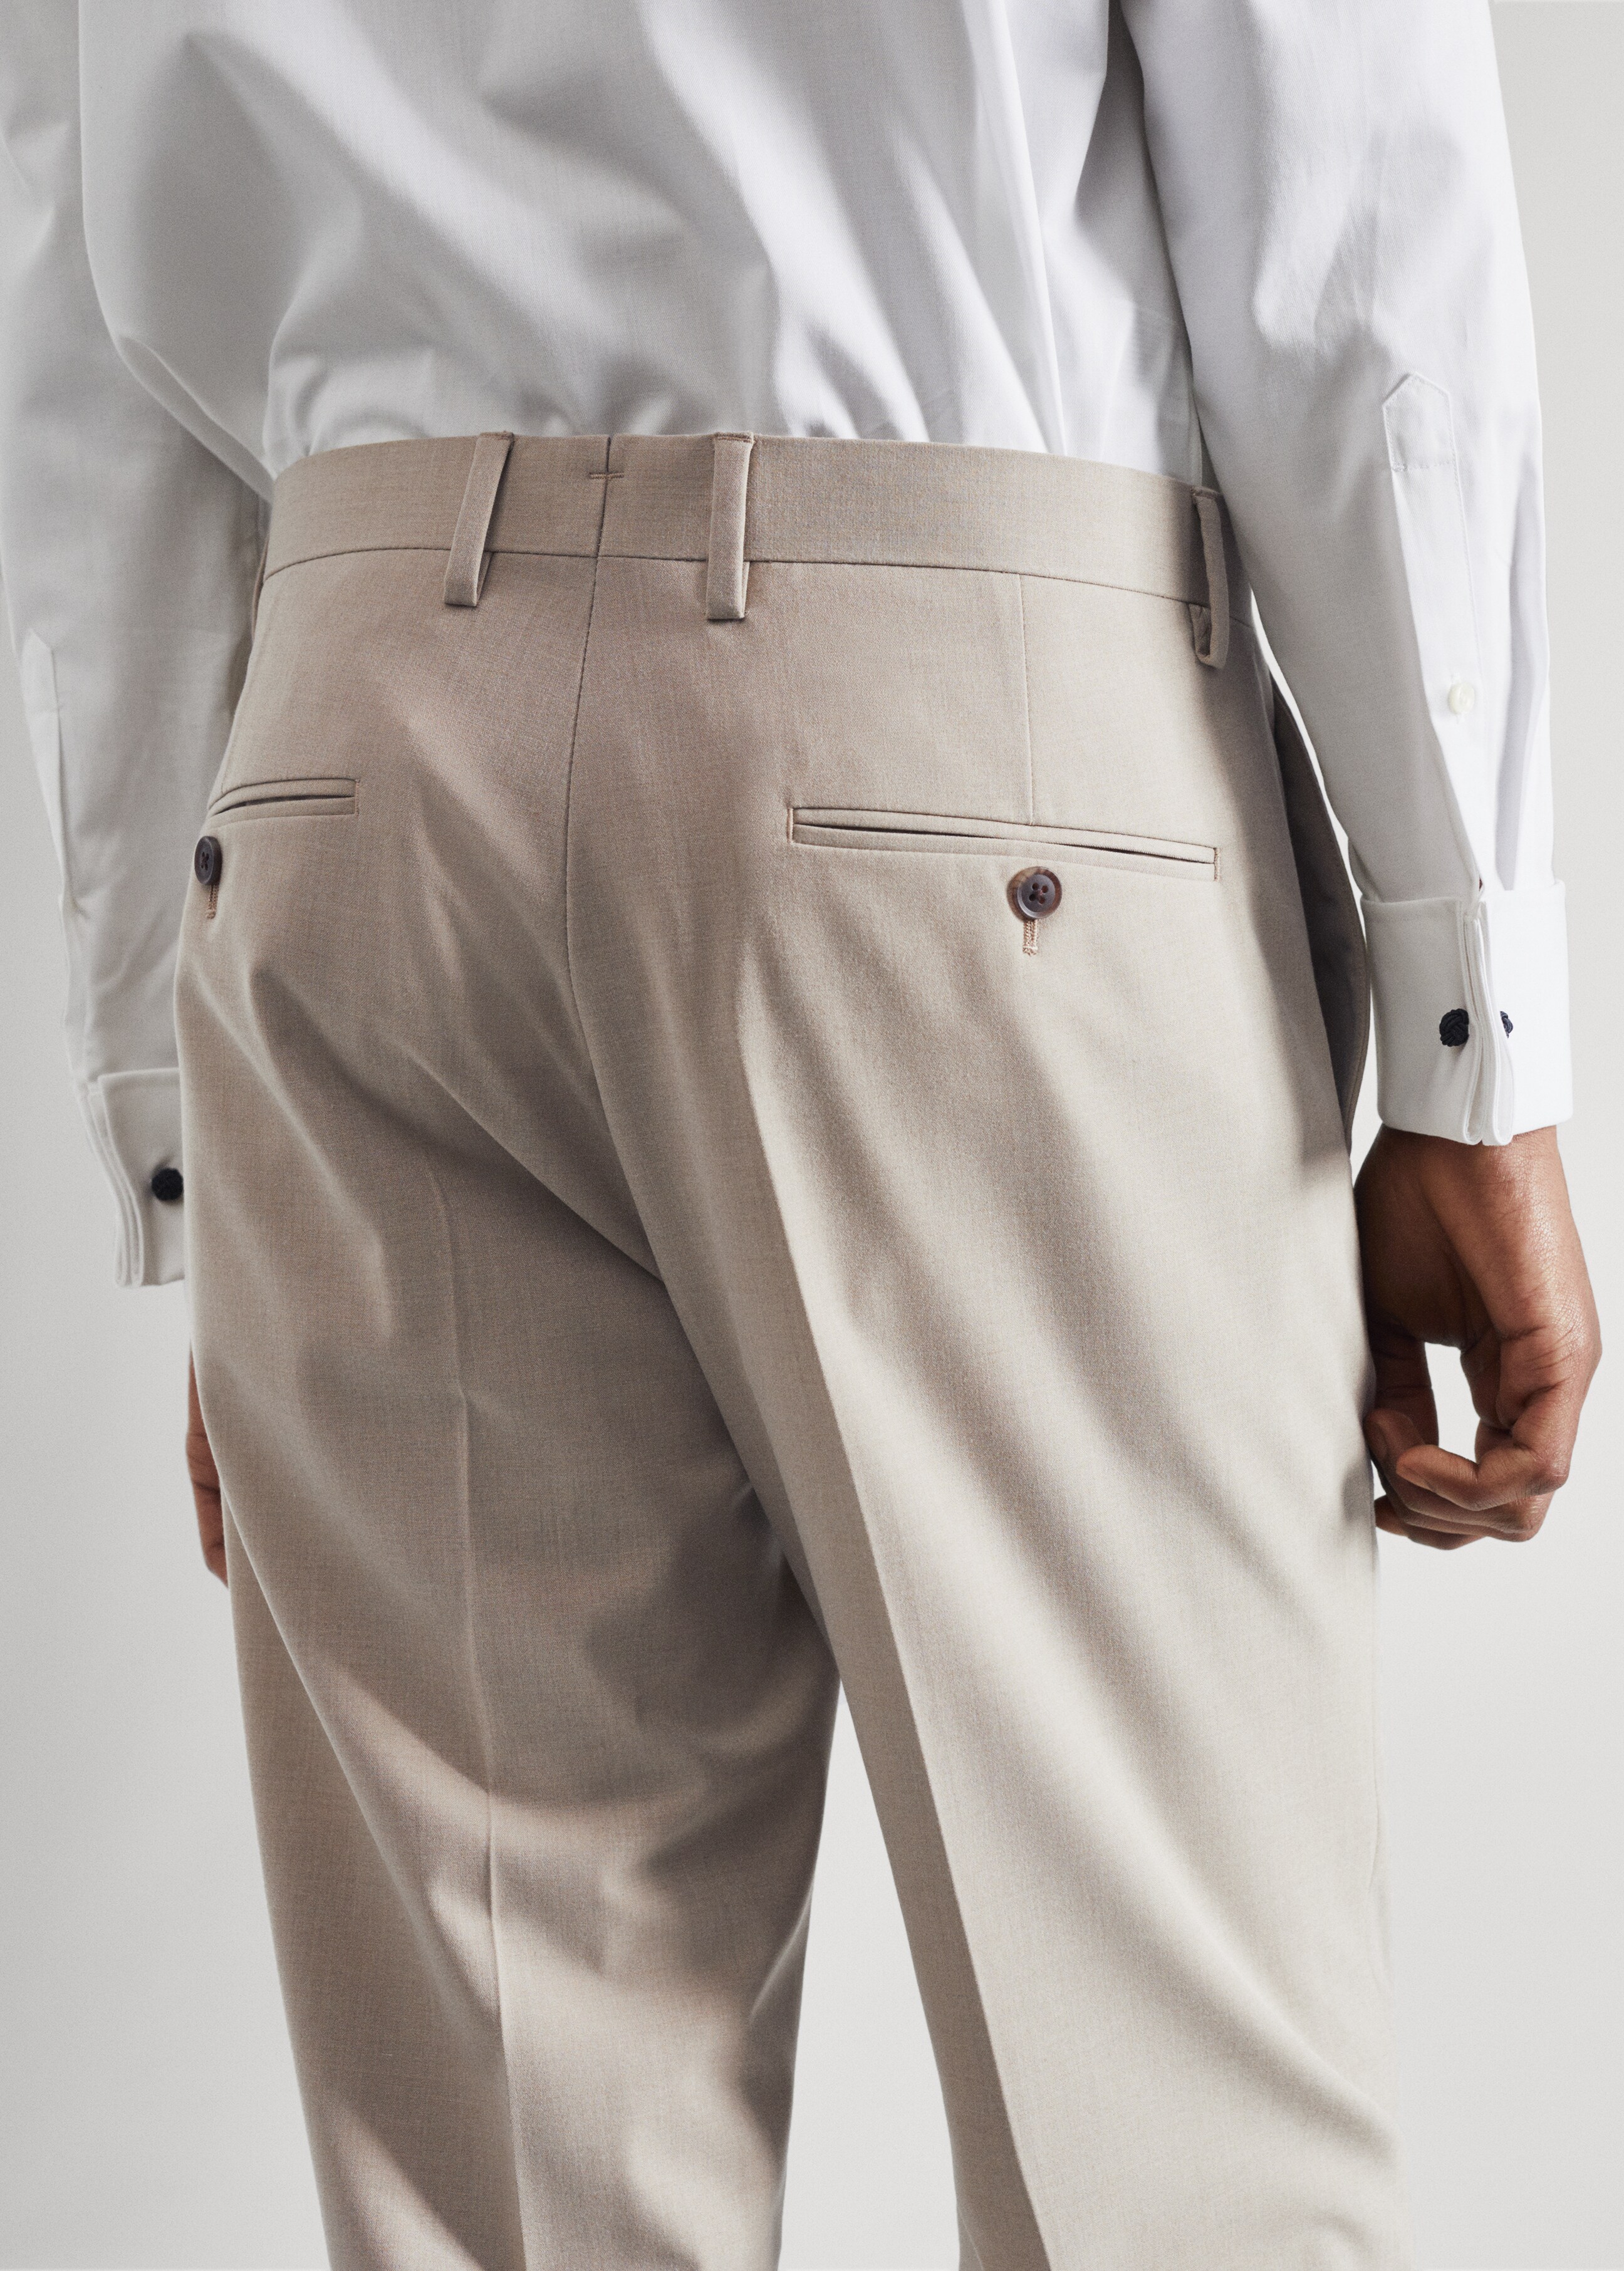 Pantalón traje slim fit tejido strech - Detalle del artículo 2